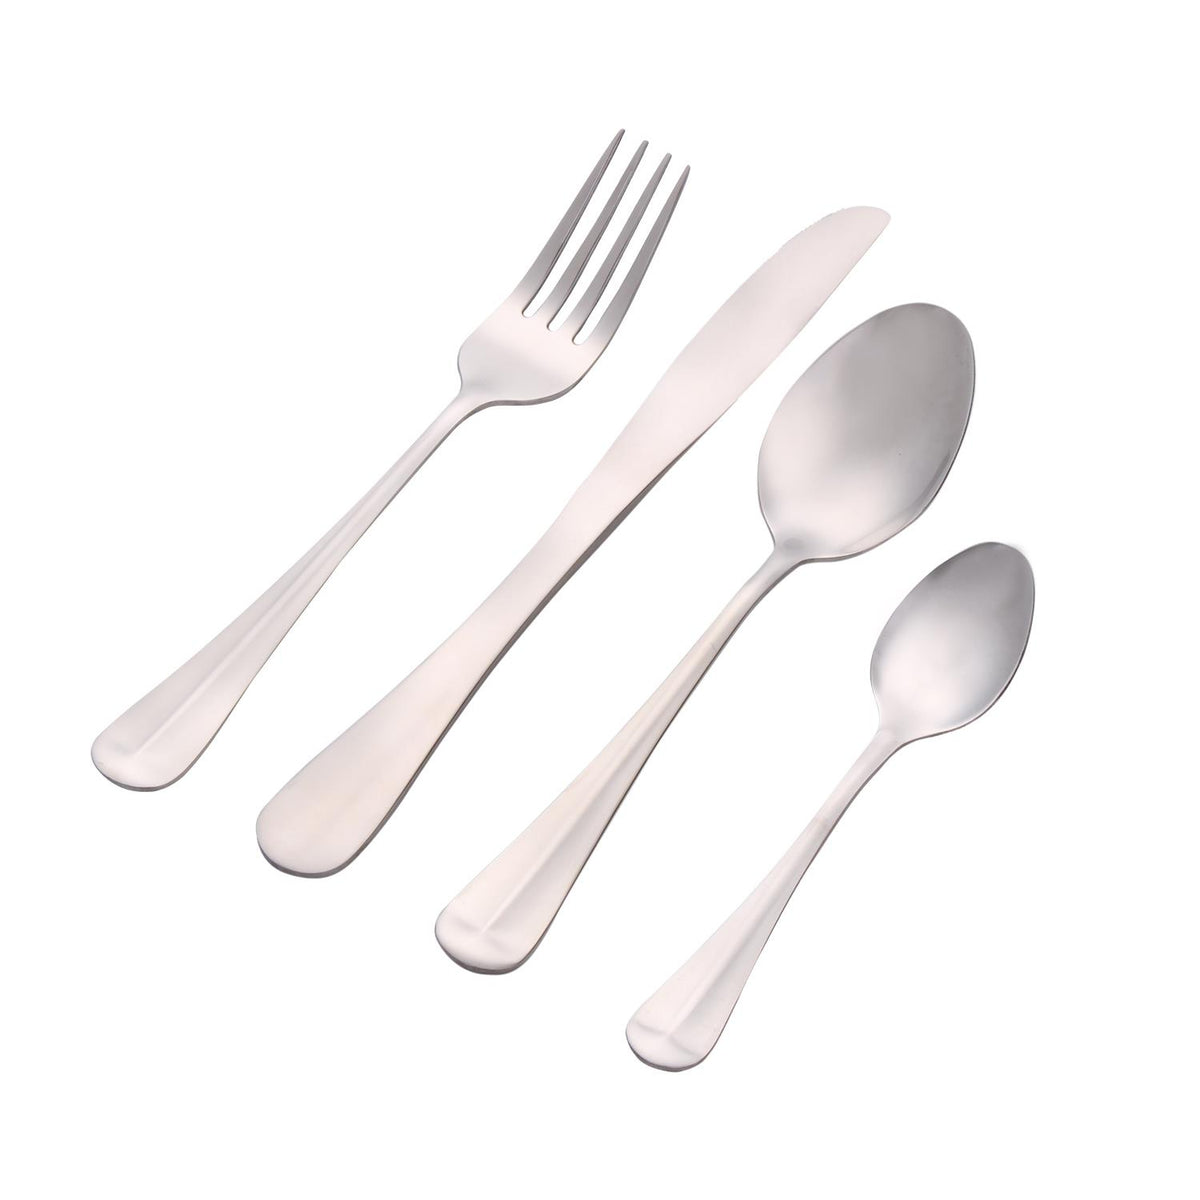 16-Piece Stainless Steel Cutlery Tableware Set